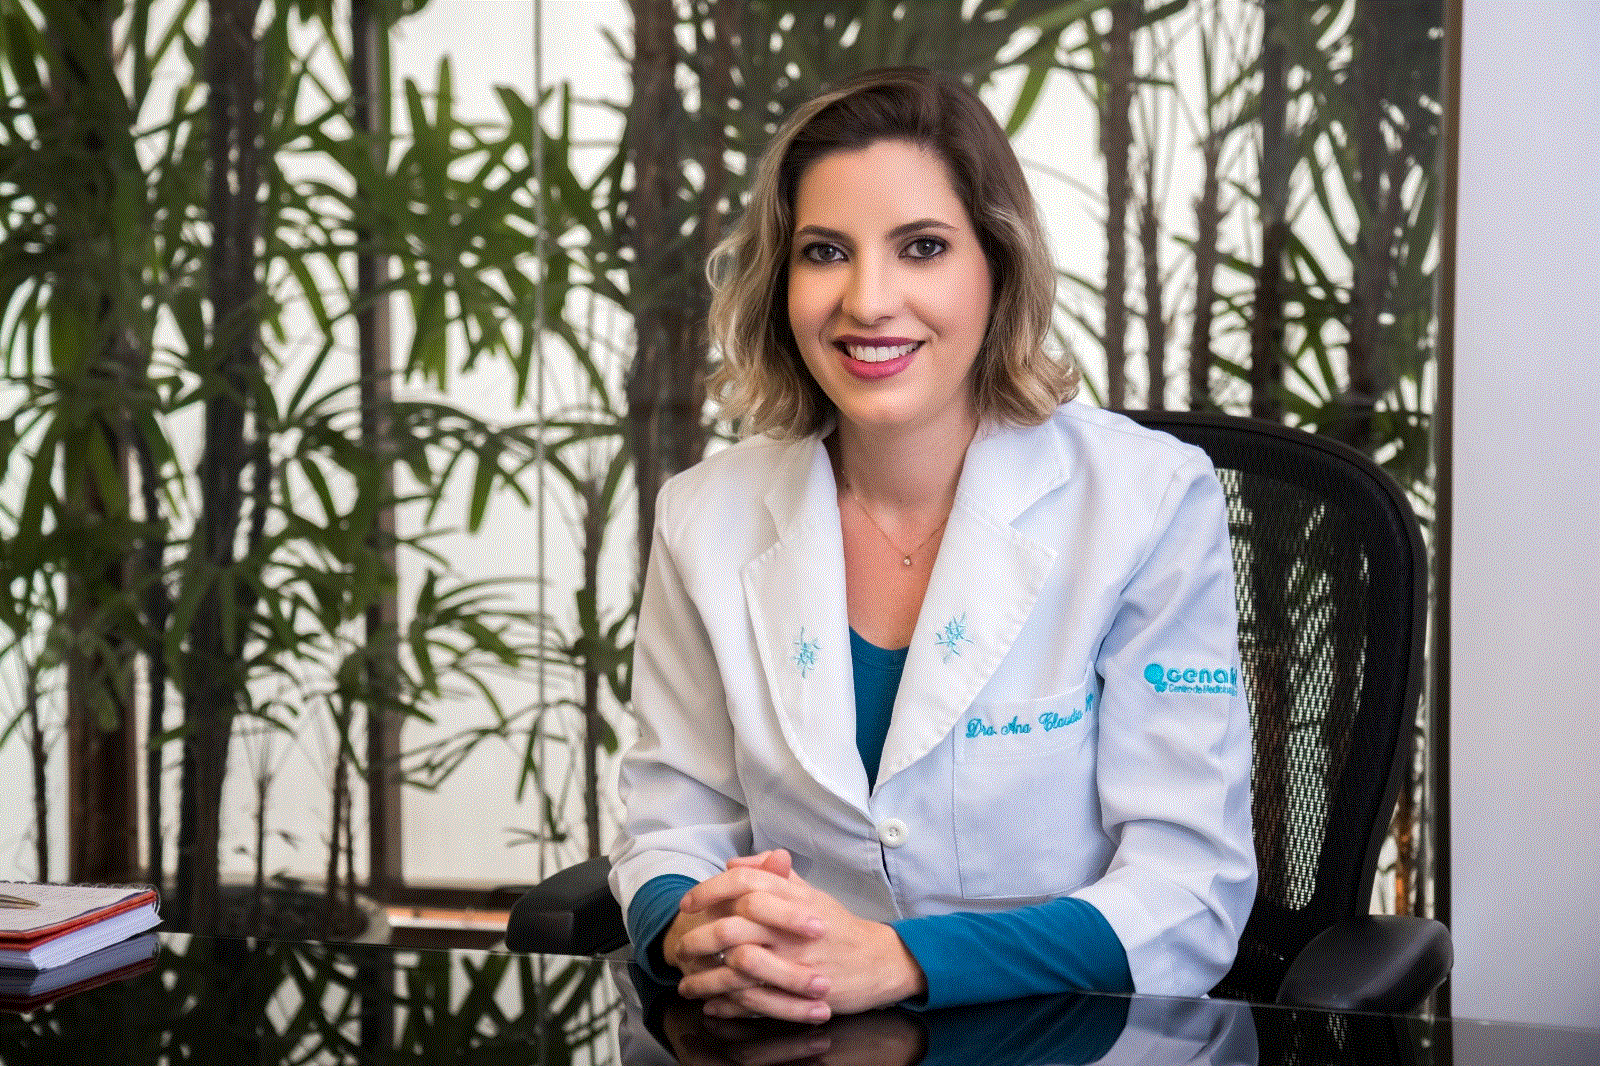 Ana Cláudia Trigo, especialista em Reprodução Humana da equipe do Cenafert - Centro de Medicina Reprodutiva